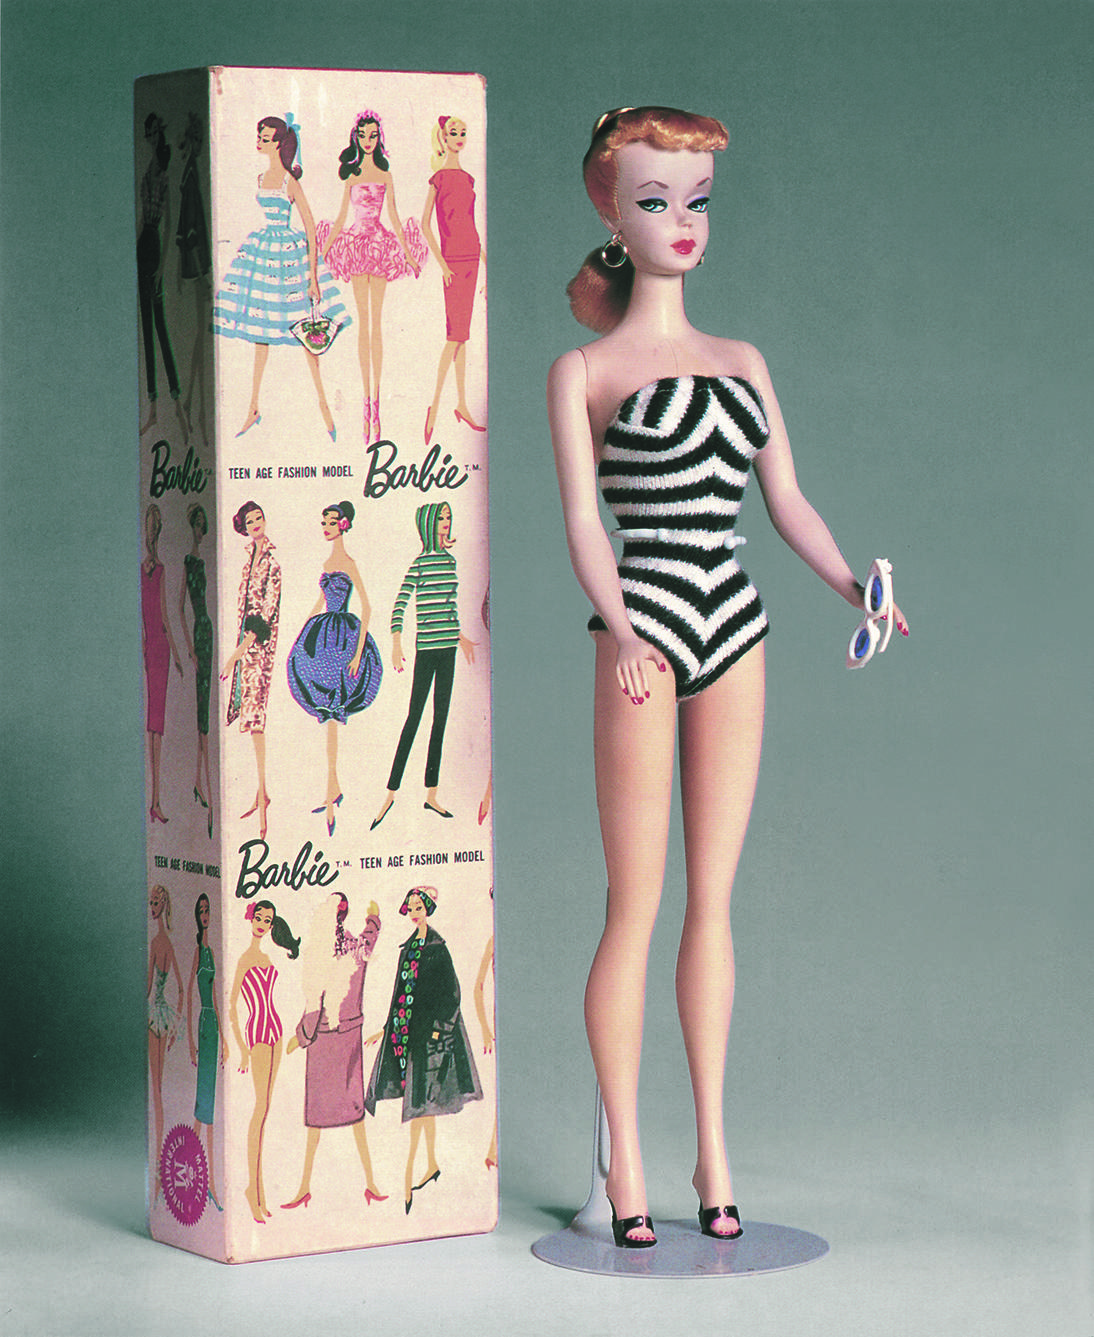 Barbie Millicent Roberts nella prima versione di Teen Age Fashion Modeldel 1959, qui nella versione bionda, con costume da bagno zebrato in jersey, occhiali da sole, orecchini, coda di cavallo (modello Ponytail), e, gli immancabili tacchi alti (foto ©Mattel Inc.)